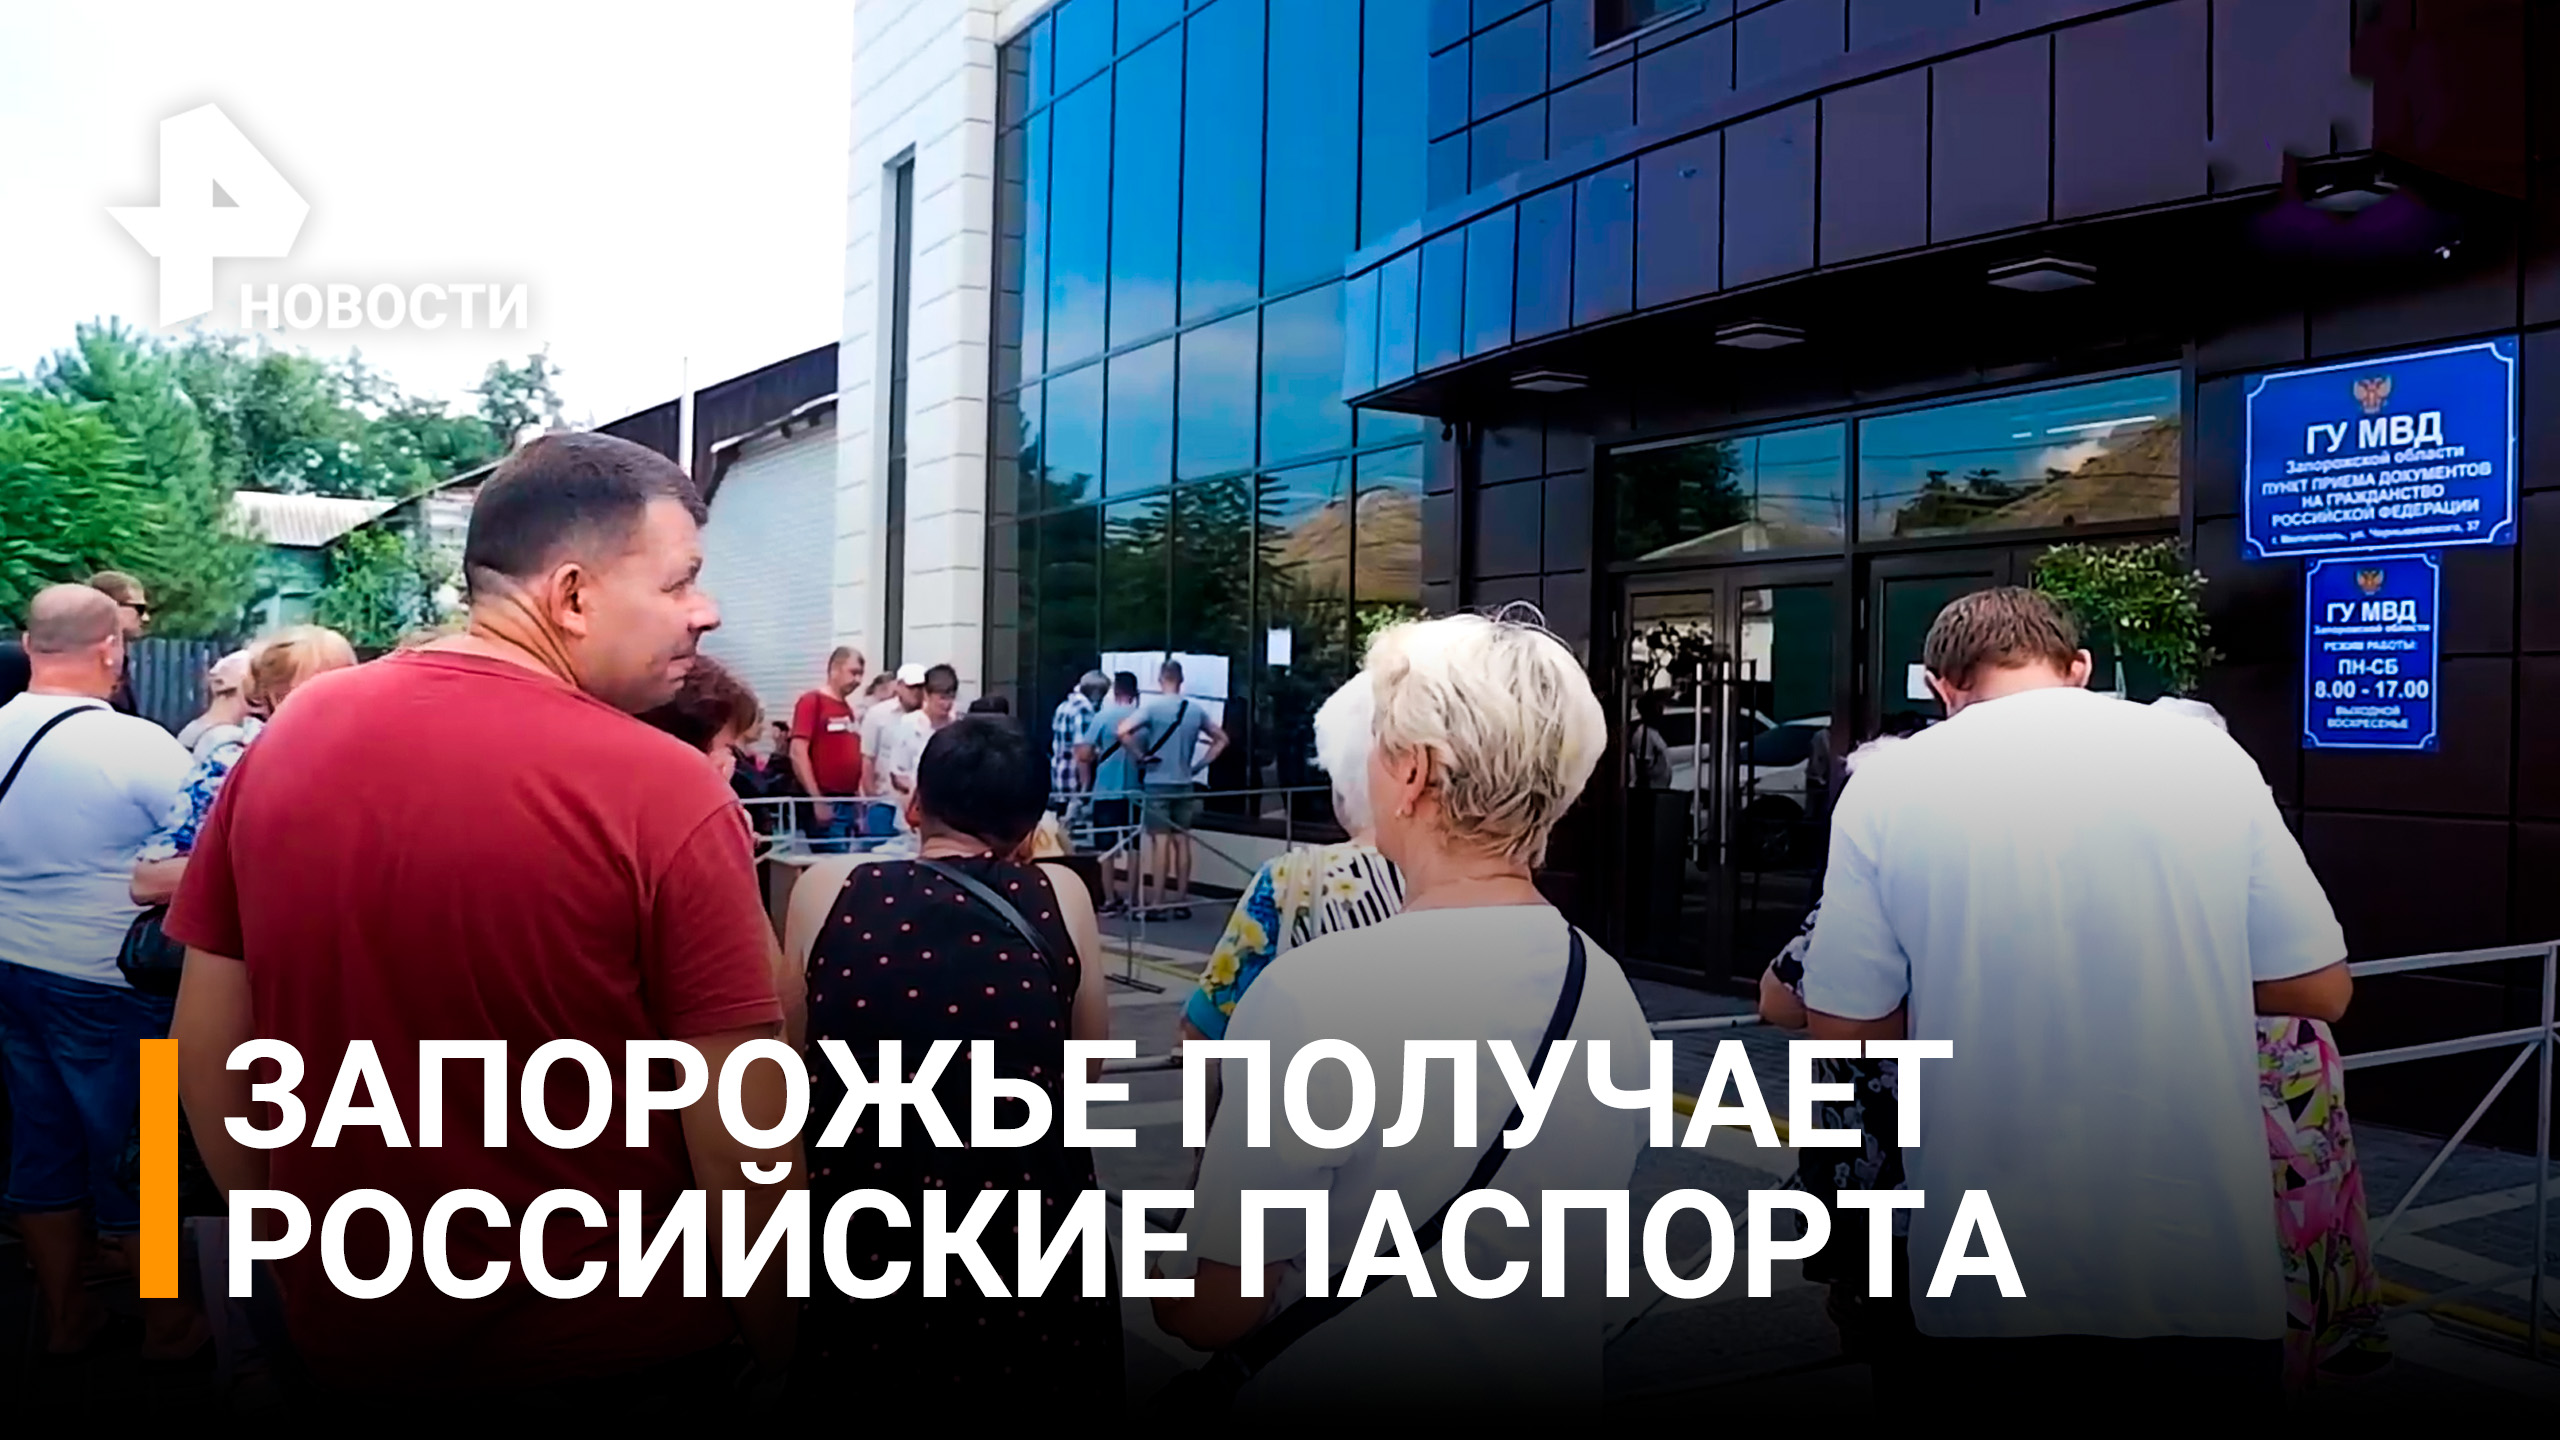 В Мелитополе продолжают выдавать паспорта образца РФ местным жителям / РЕН Новости